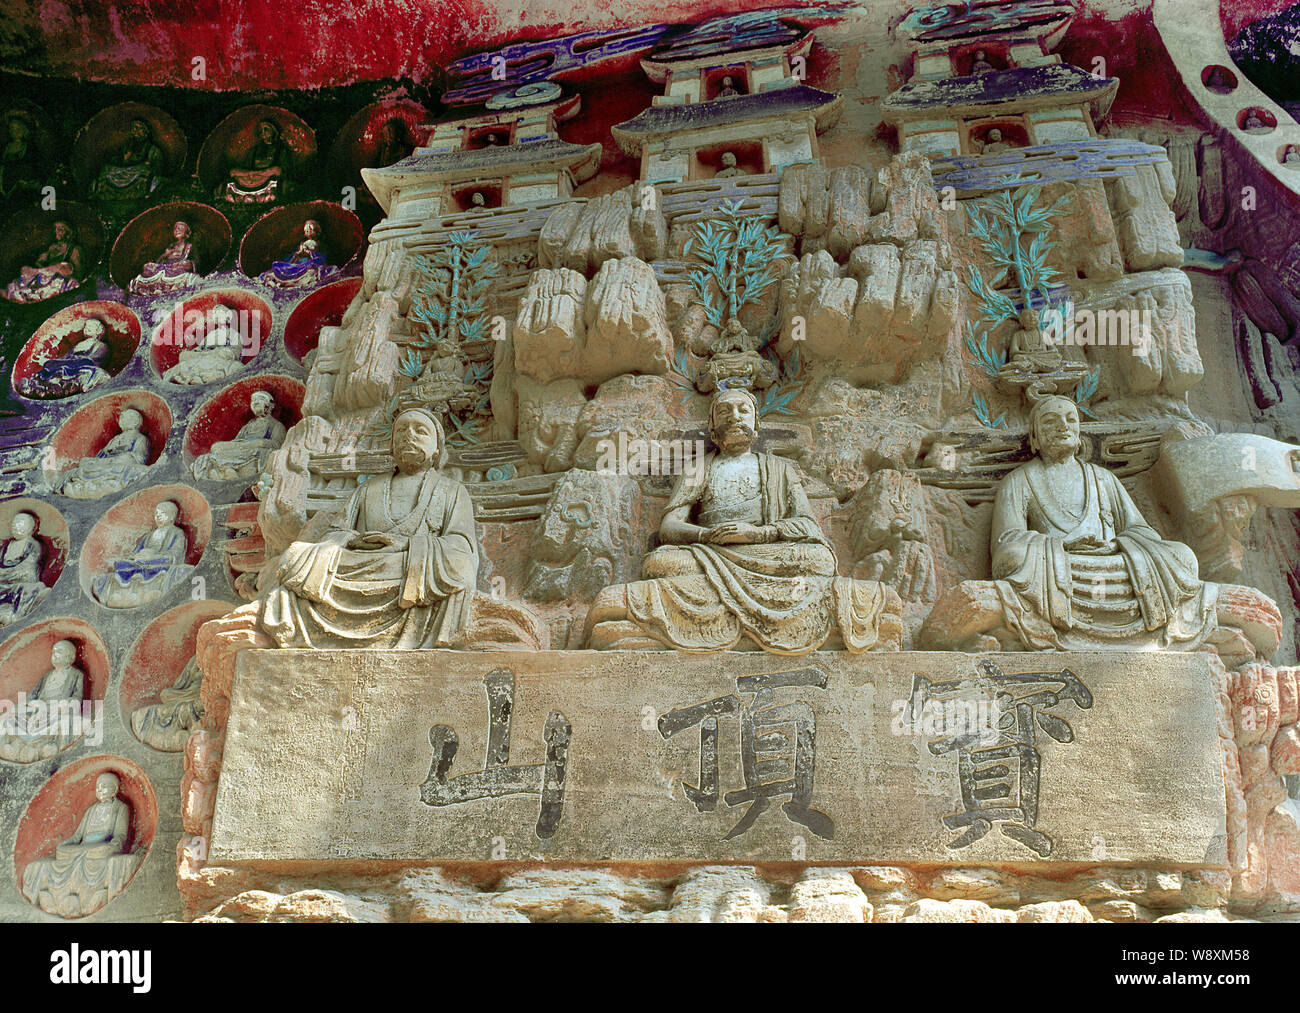 View of Dazu rock carvings of buddhas on Mount Baoding, or Bao Ding Mountain, in Dazu County, Chongqing, China. Stock Photo